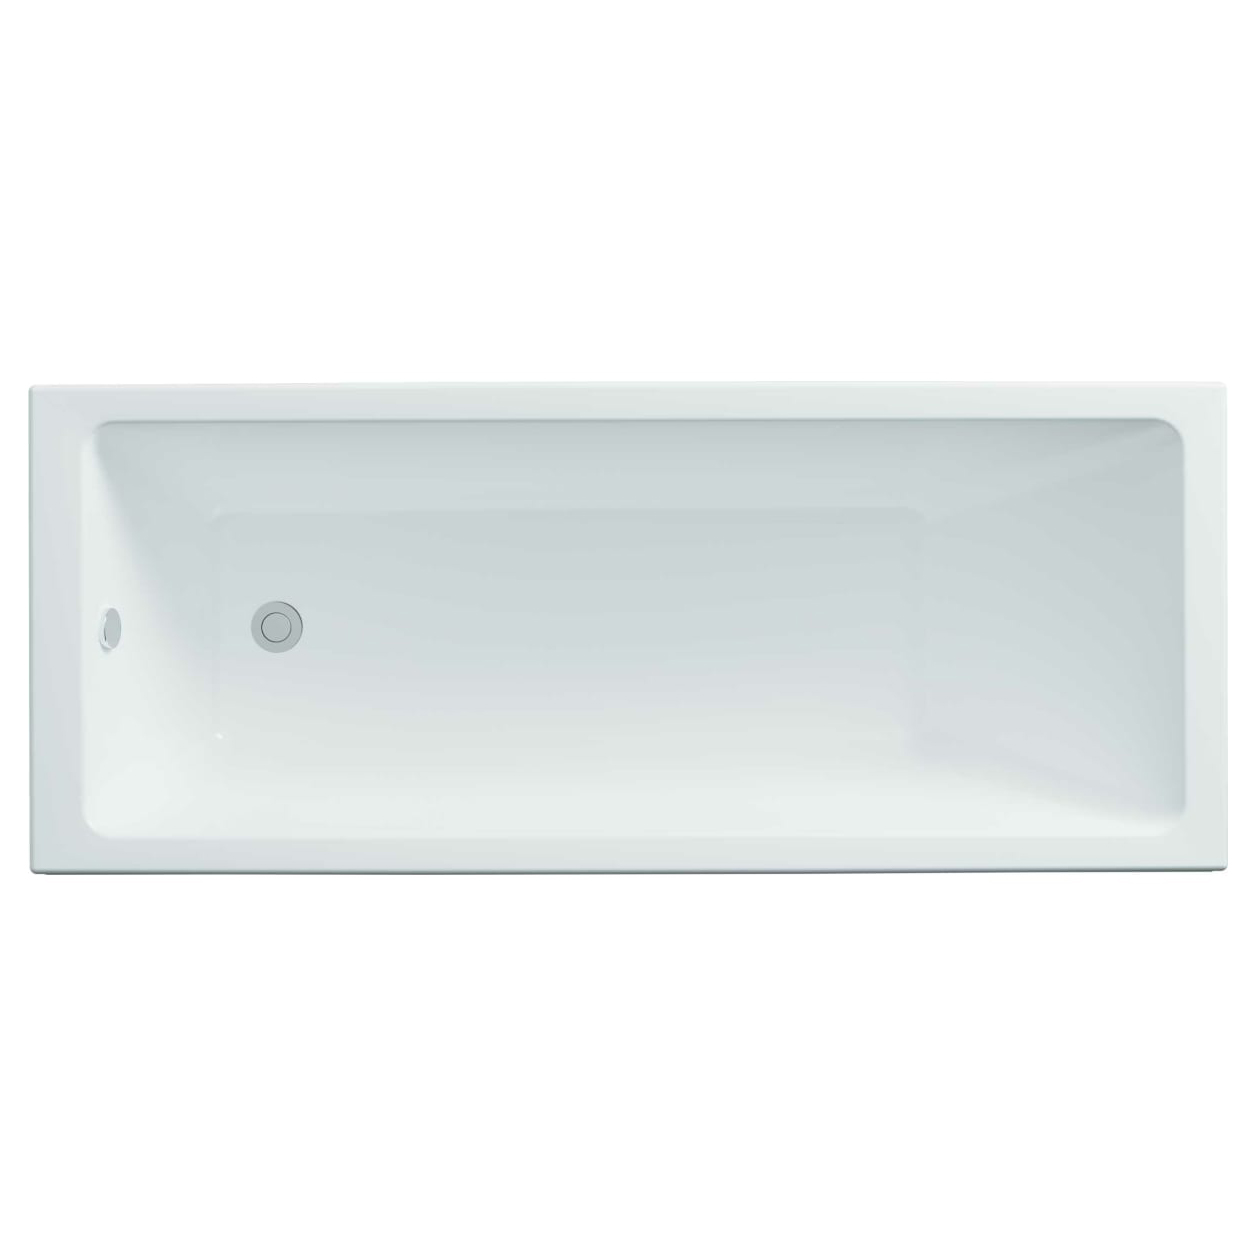 Акриловая ванна Тритон Аура 170, цвет белый Щ0000042101 - фото 1